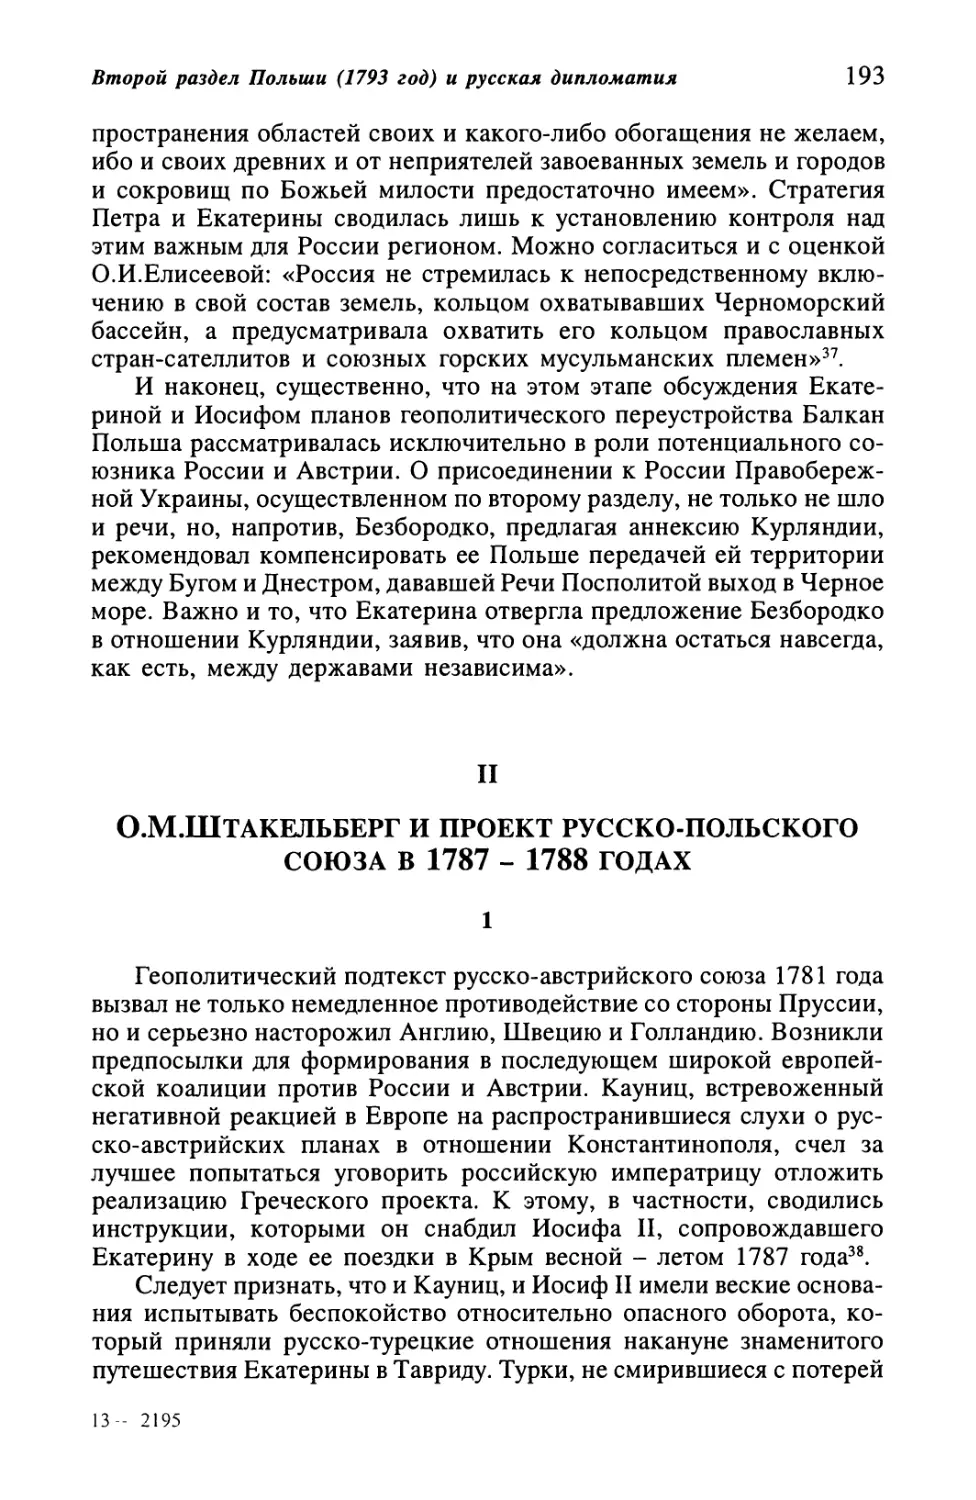 II. О. М. Штакельберг и проект русско-польского союза в 1787-1788 гoдaх